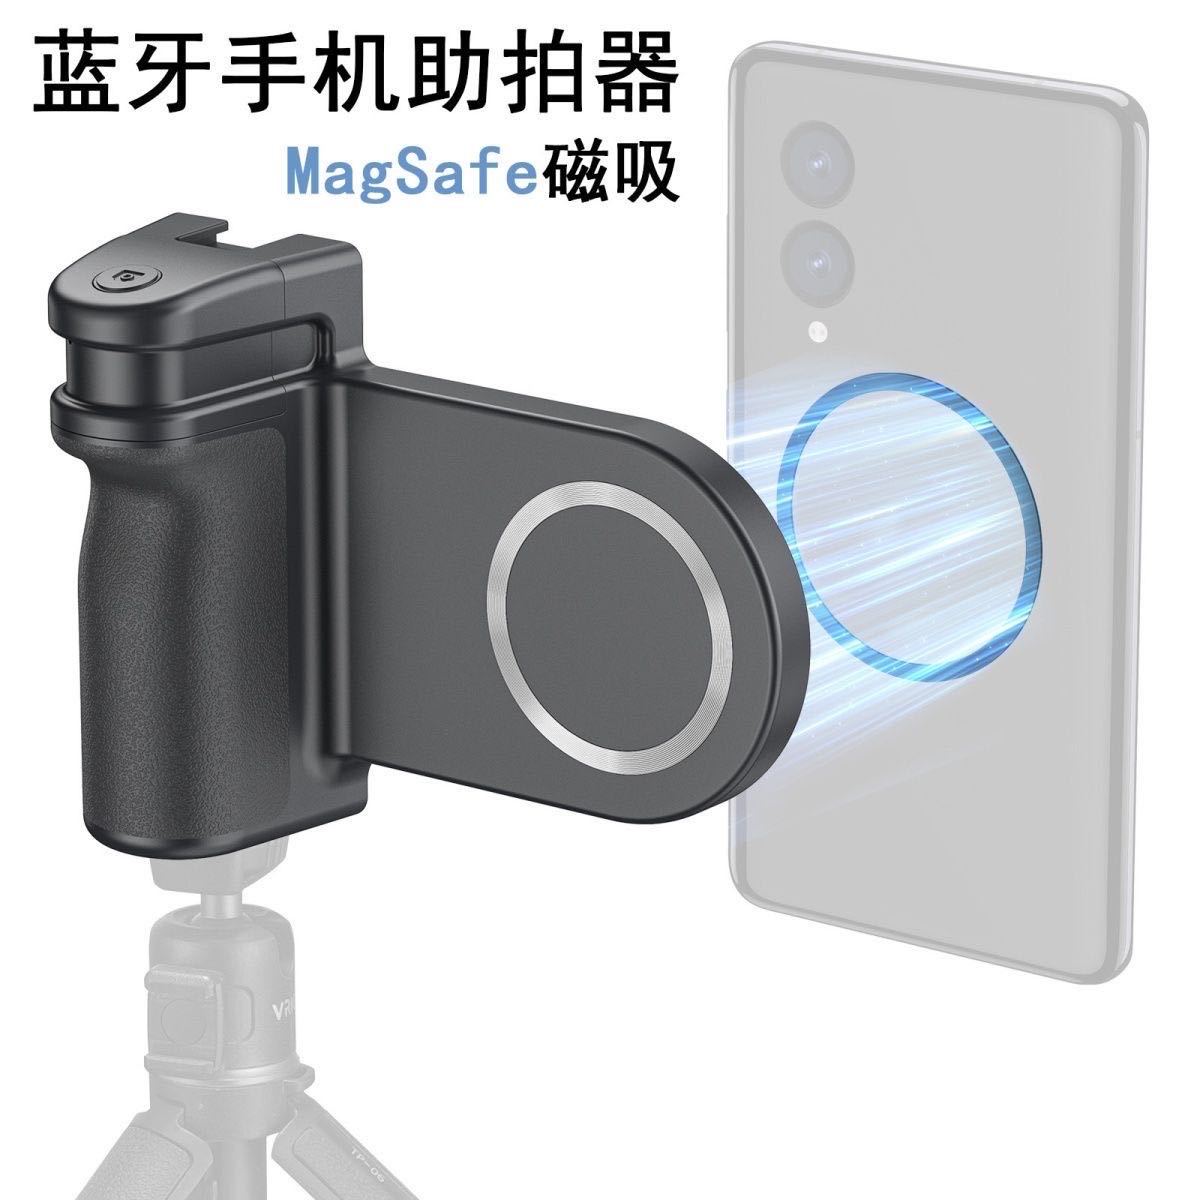 magsafe磁吸手机支架自拍器 无线蓝牙相机手柄支架手机防抖助拍器